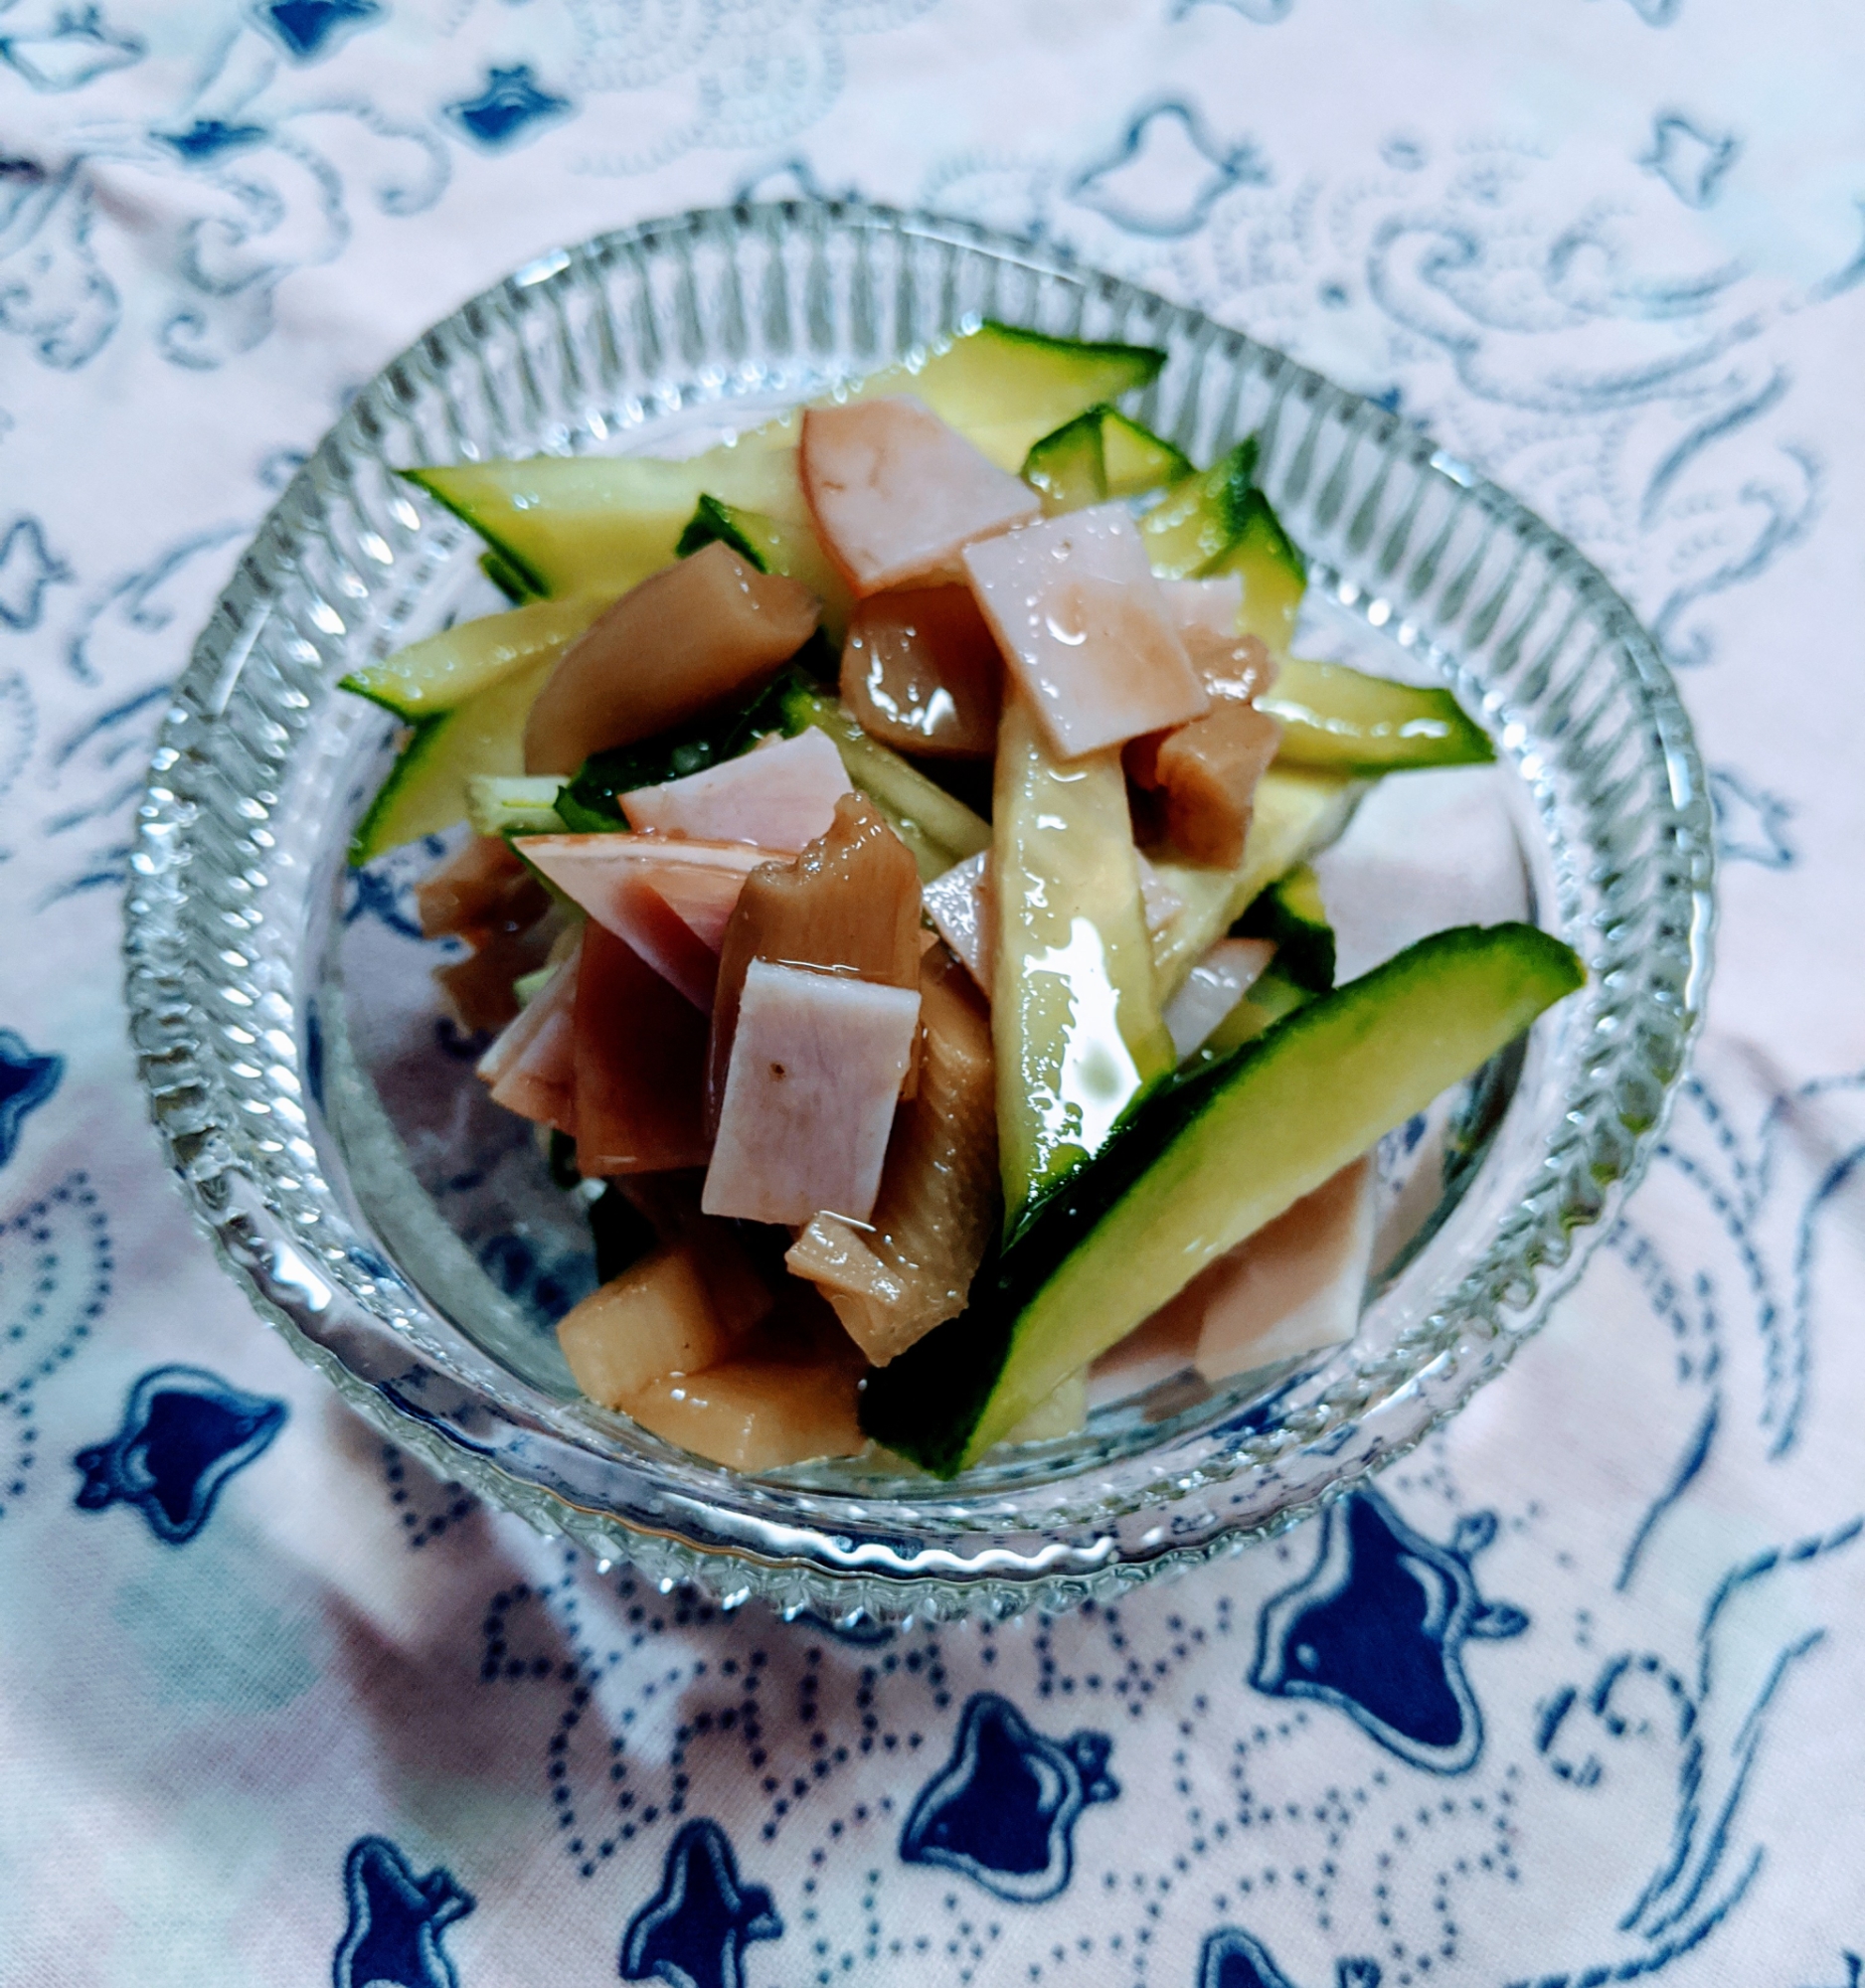 きゅうりとメンマの中華風なサラダ